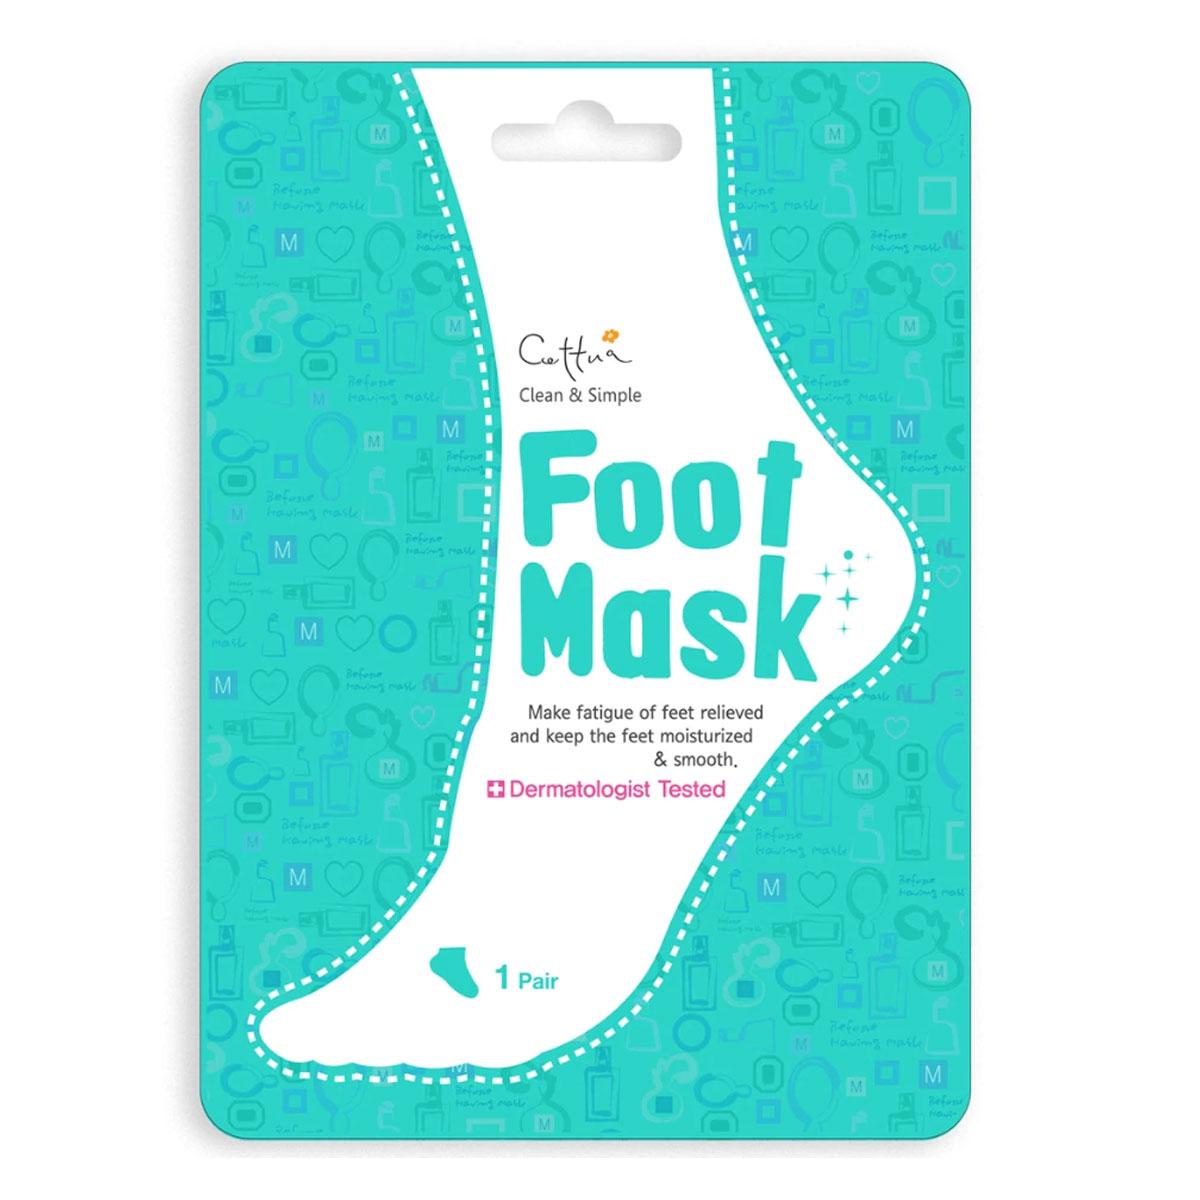 ماسک پا کره ای - Foot mask